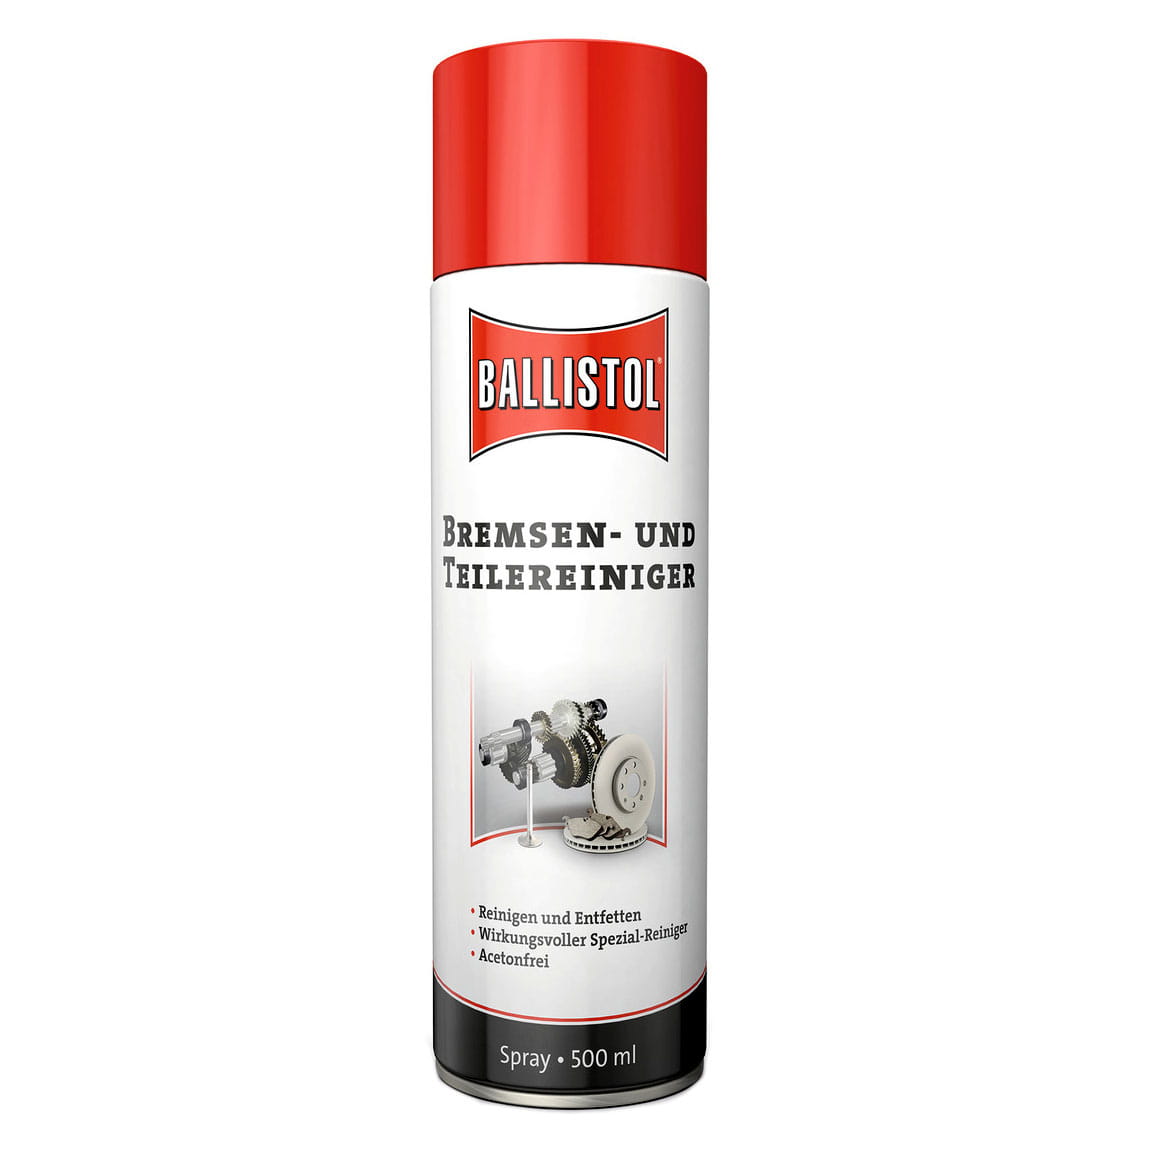 Ballistol Bremsenreiniger and Teilereiniger 500 ml Spraydose